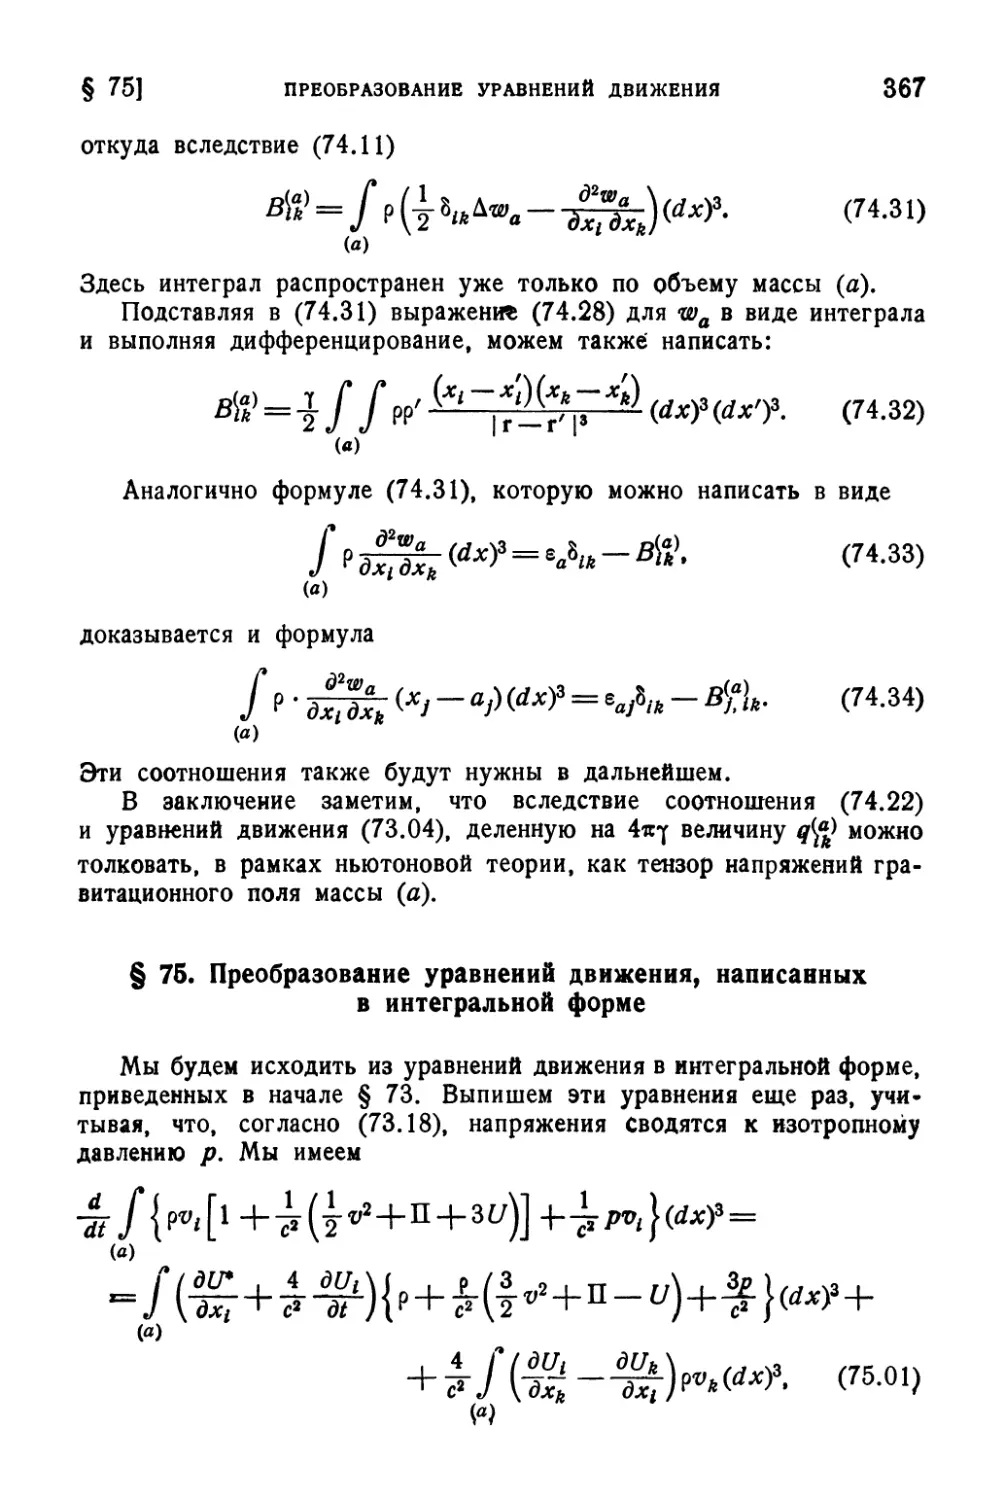 § 75. Преобразование уравнений движения, написанных в интегральной форме